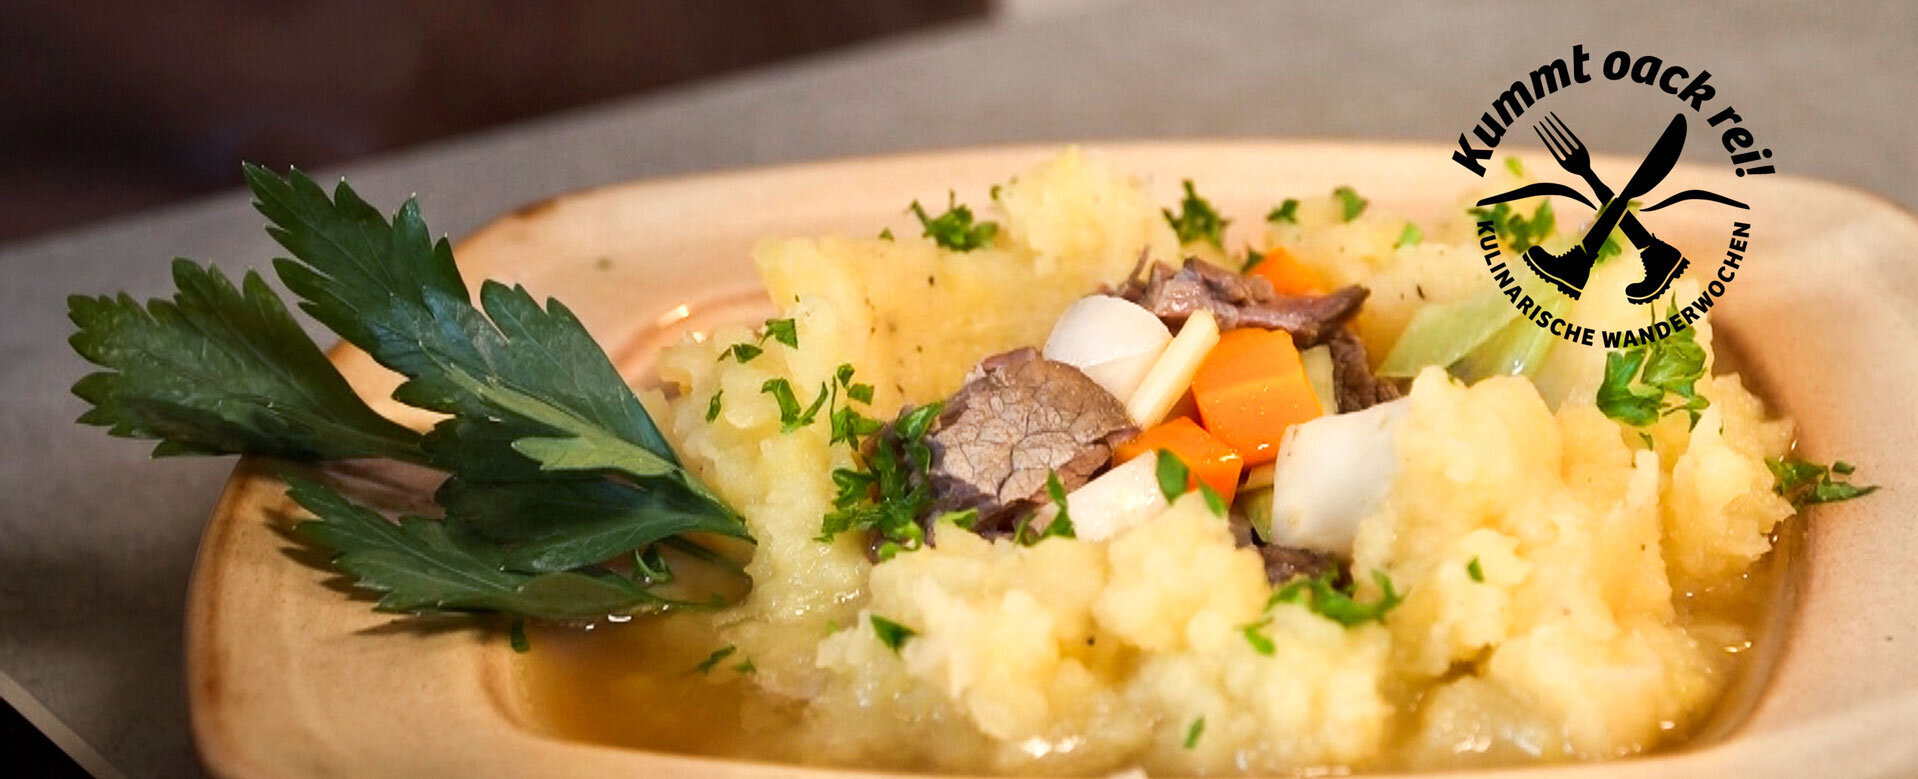 Szczegółowy obraz dania gulaszowego z ziemniakami, mięsem i warzywami oraz znak słowny/obrazkowy